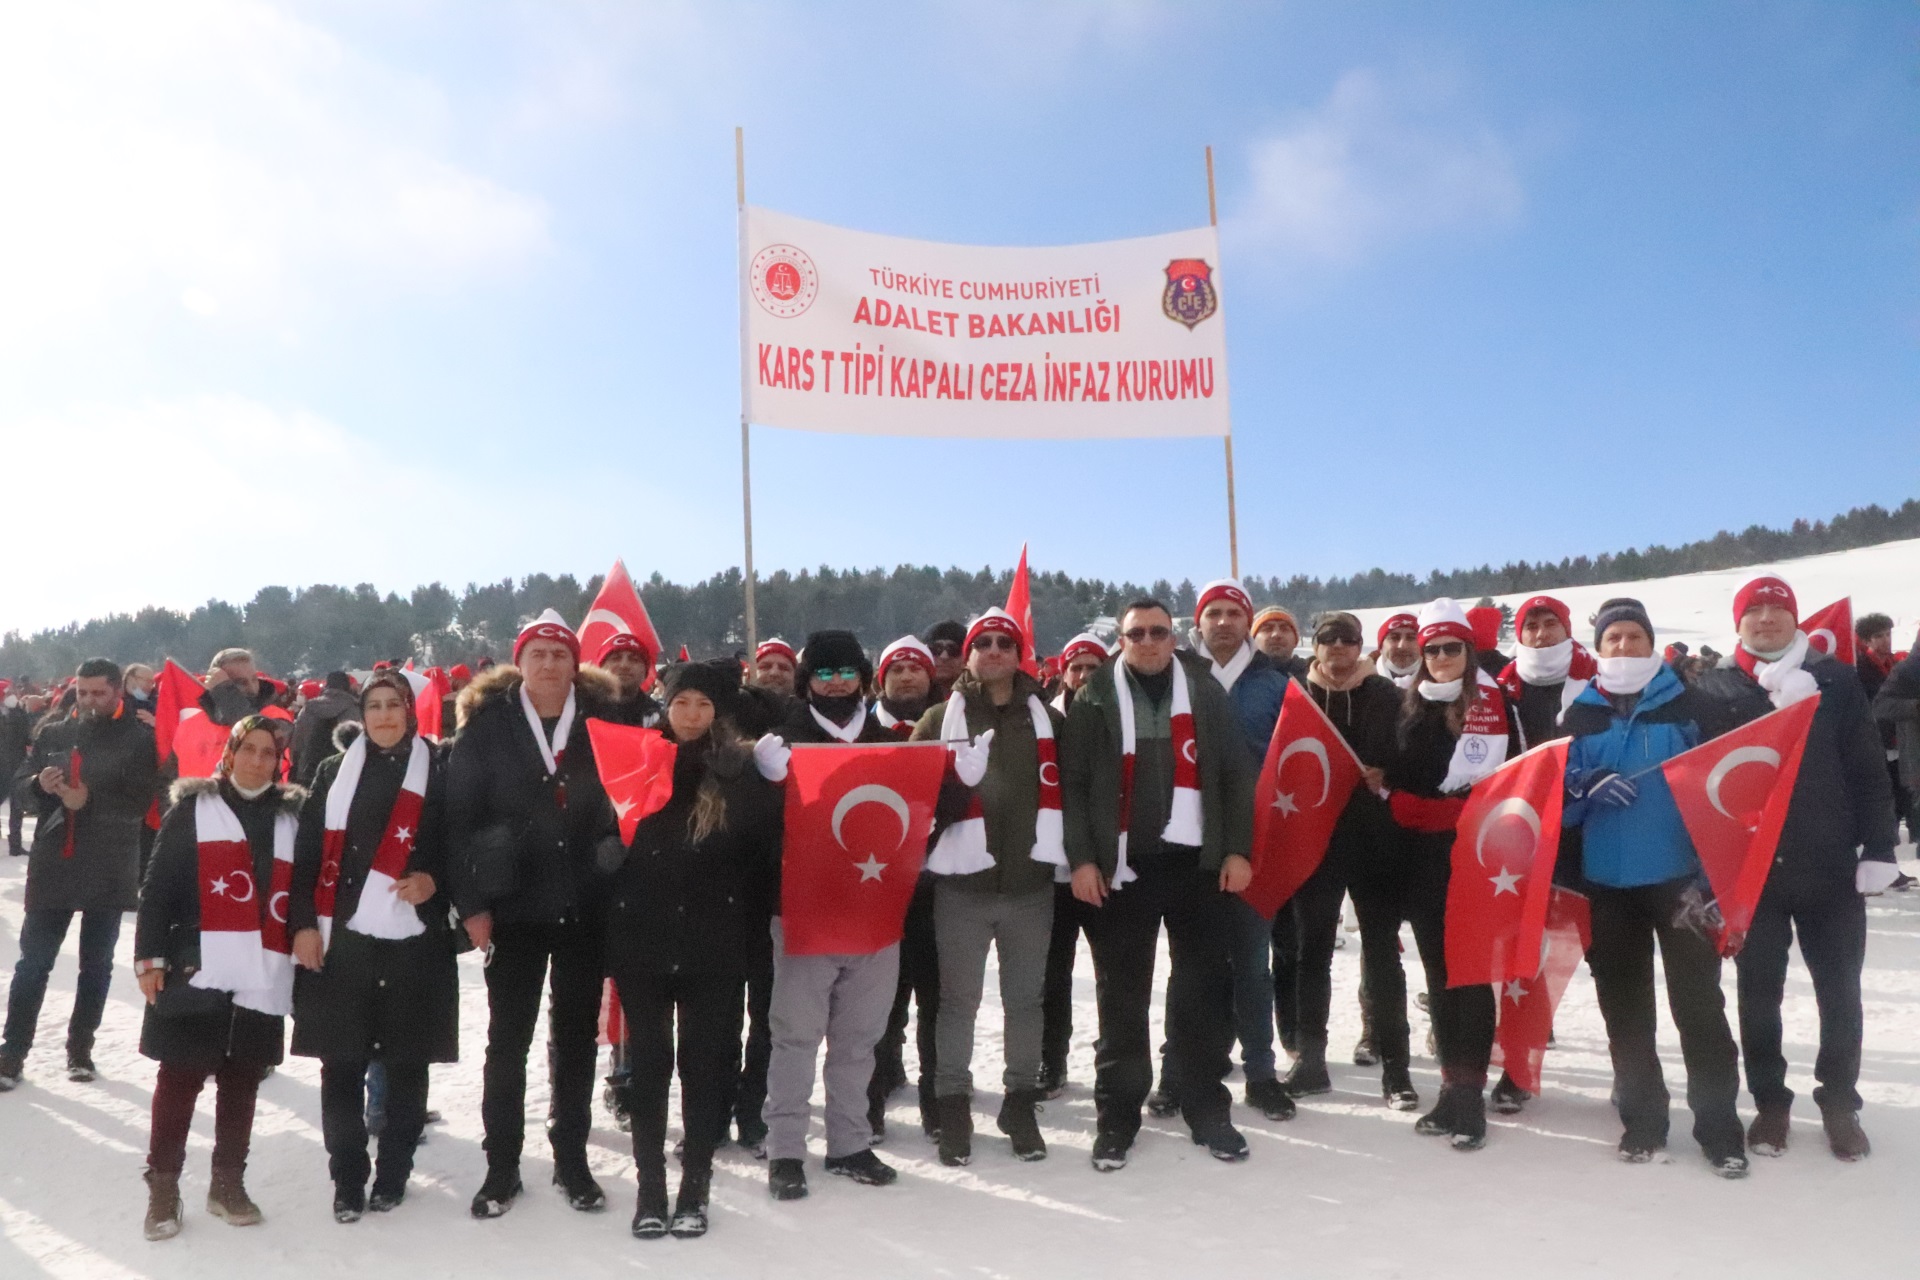 Sarıkamış Harekatı'nın 107'nci yıl dönümü dolayısıyla düzenlenen  'Türkiye Şehitleriyle Yürüyor' etkinliği kapsamında şehitler için  ‘Şühedanın İzinde’ yürüyüşü gerçekleştirildi.